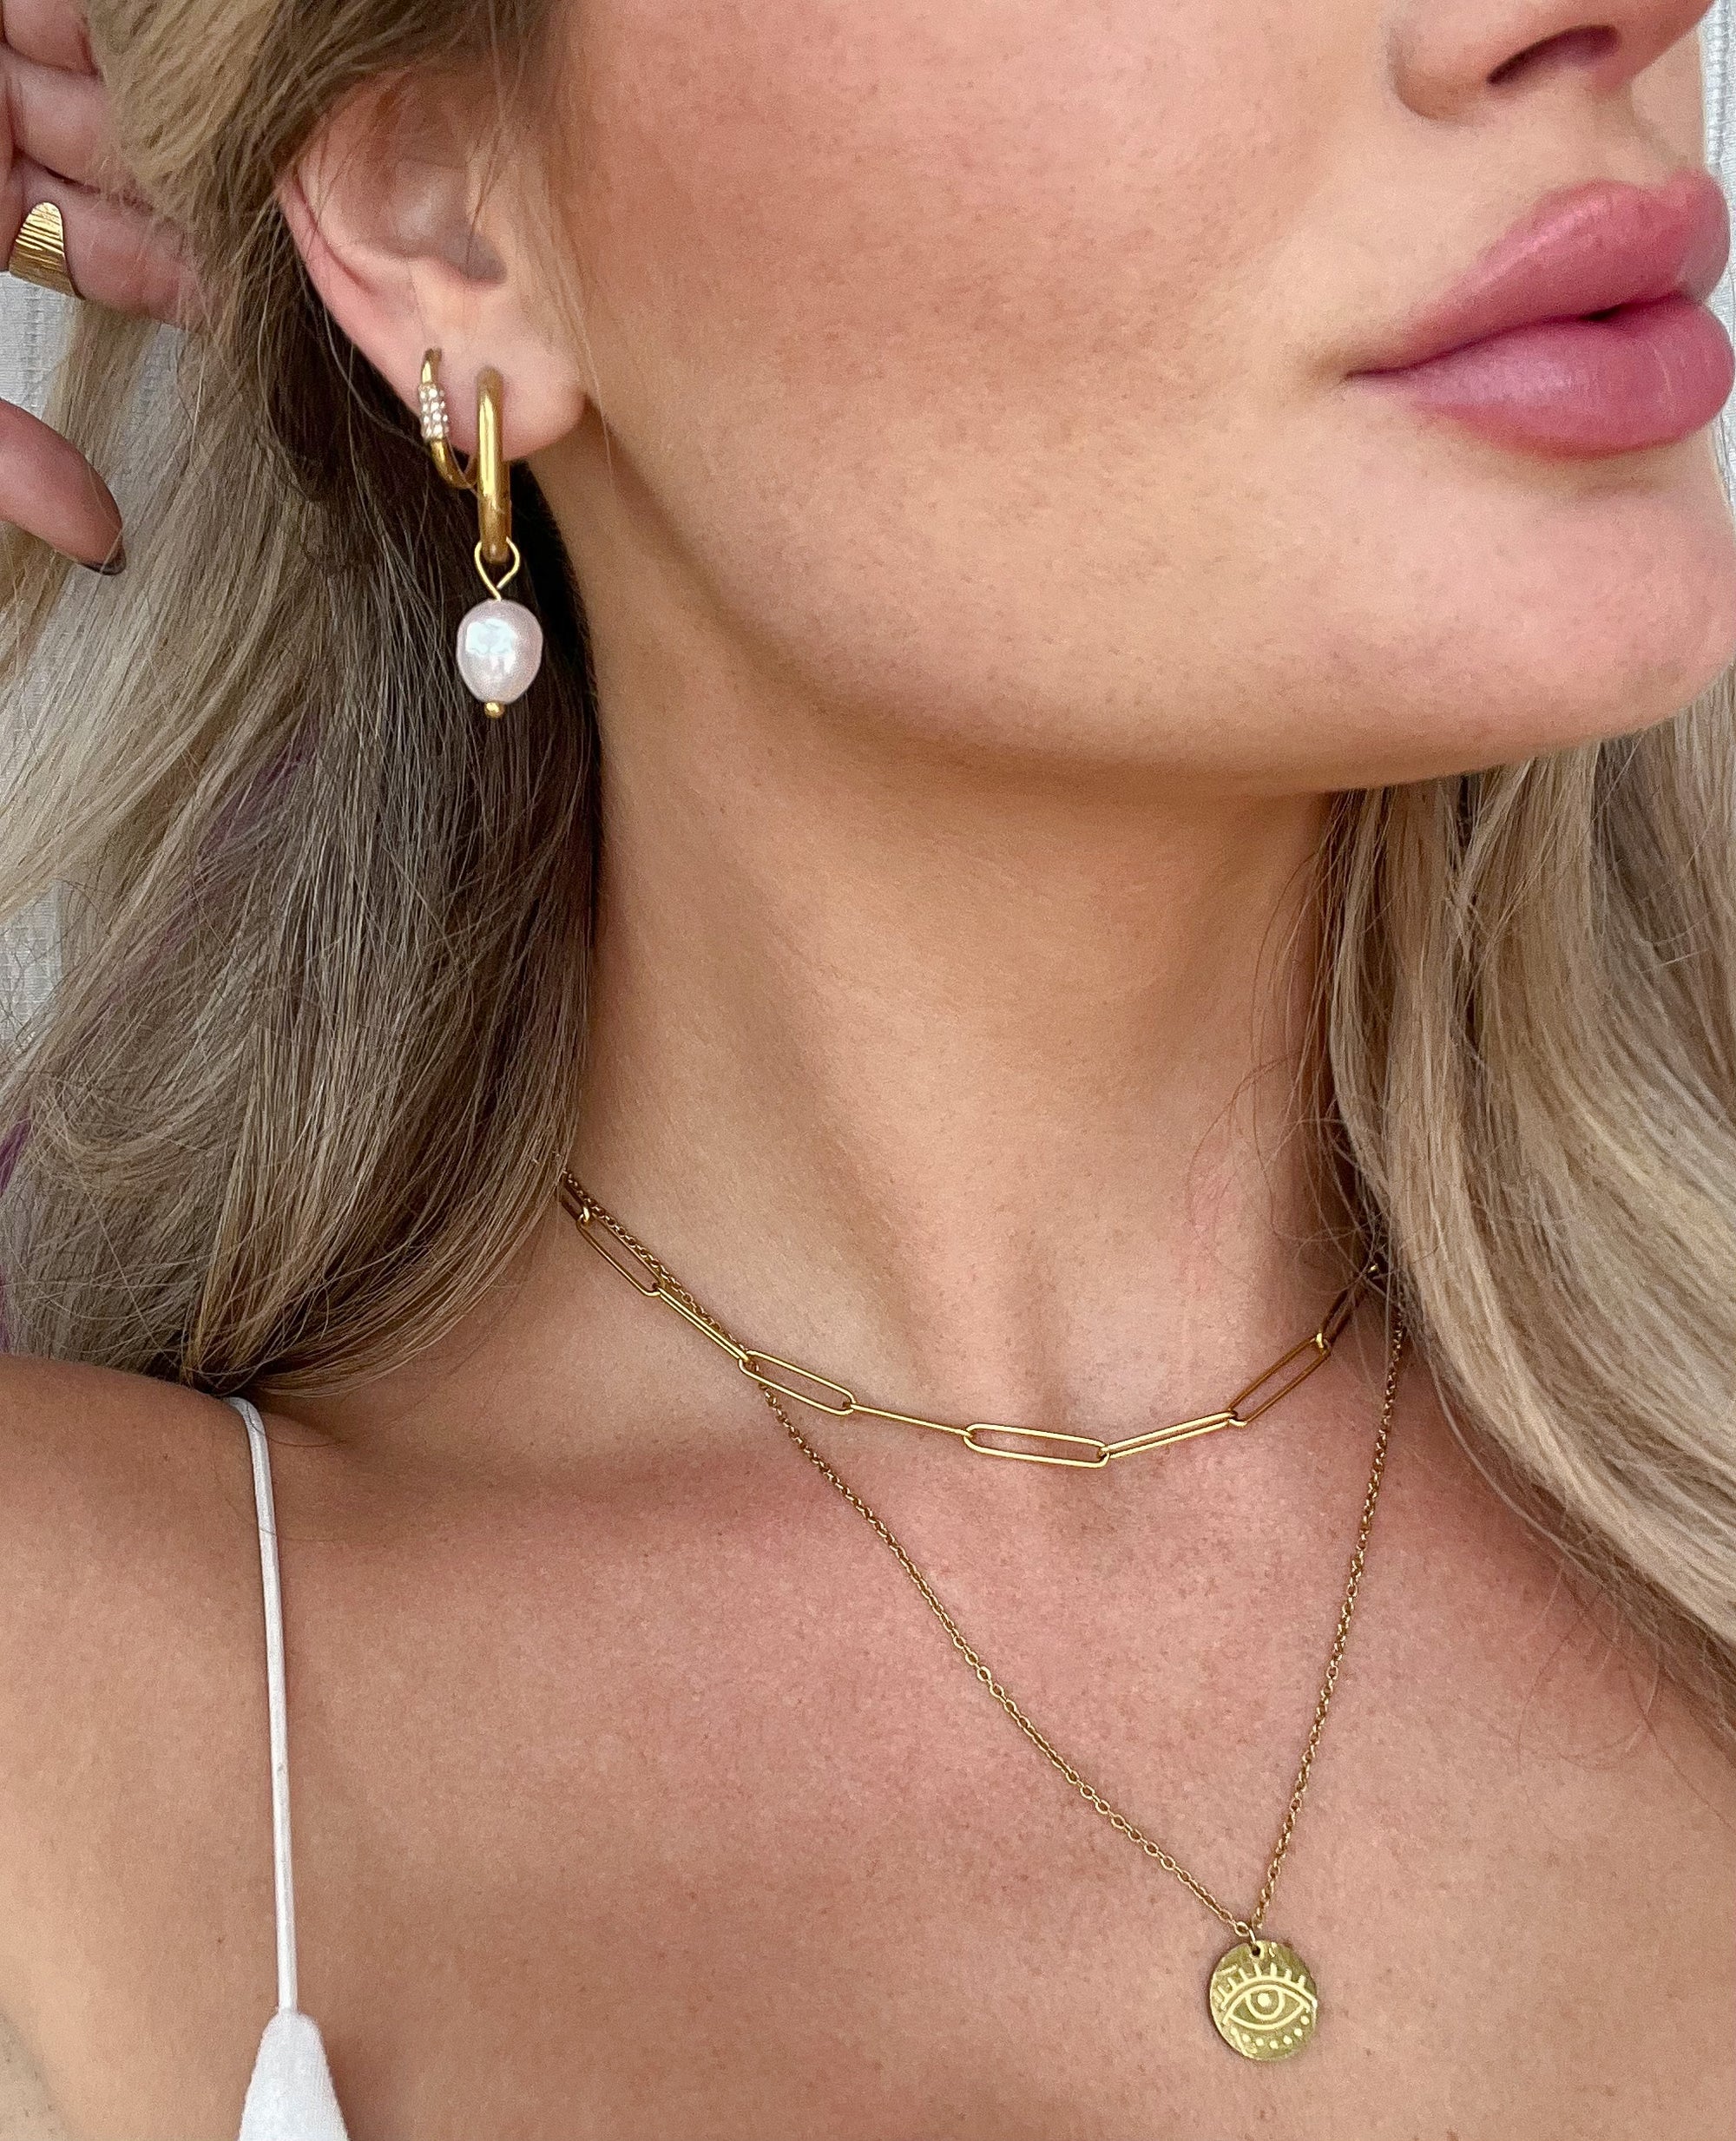 Oahu Earrings - For the Girls Jewelry